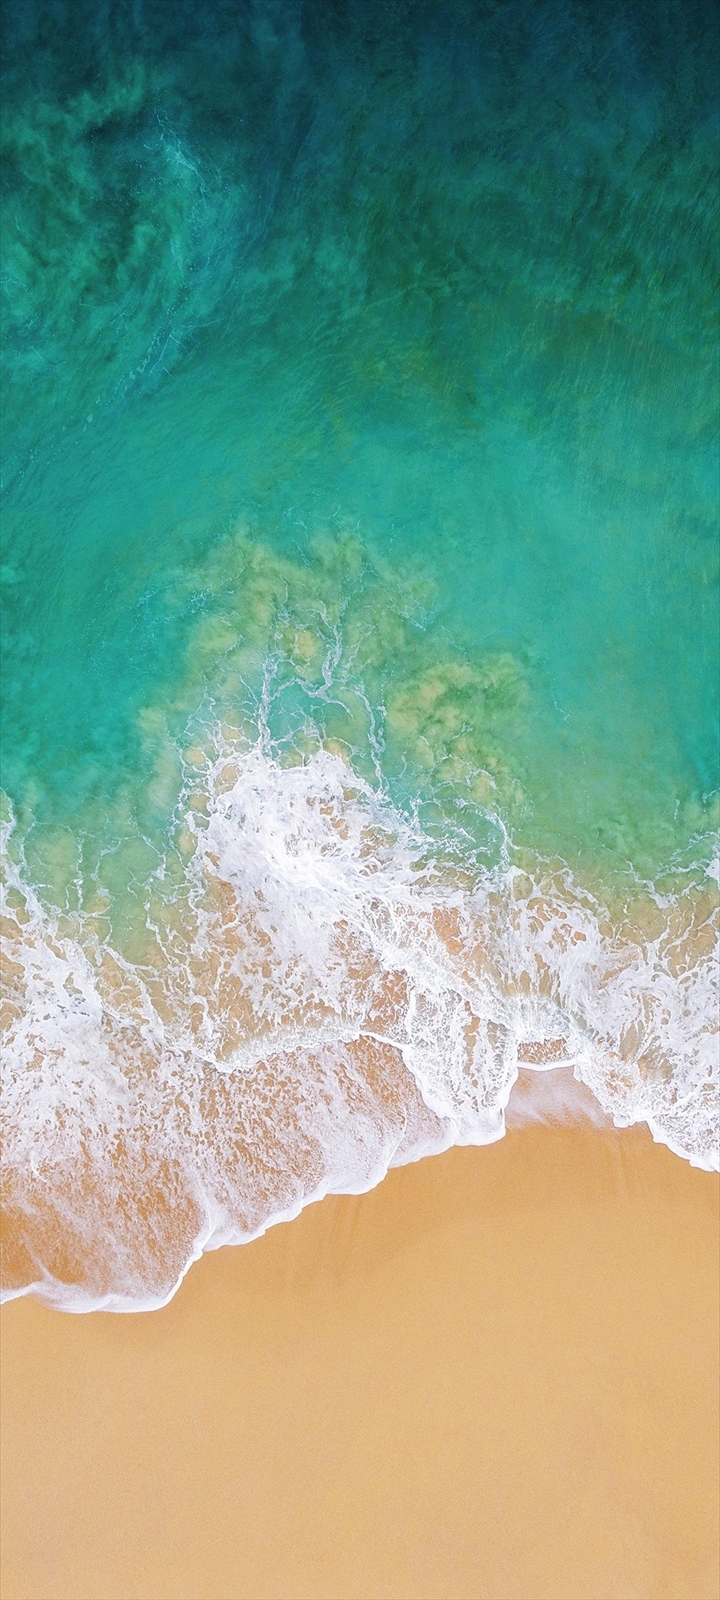 俯瞰視点 綺麗な海と浜辺 Moto G9 Play Androidスマホ壁紙 待ち受け スマラン